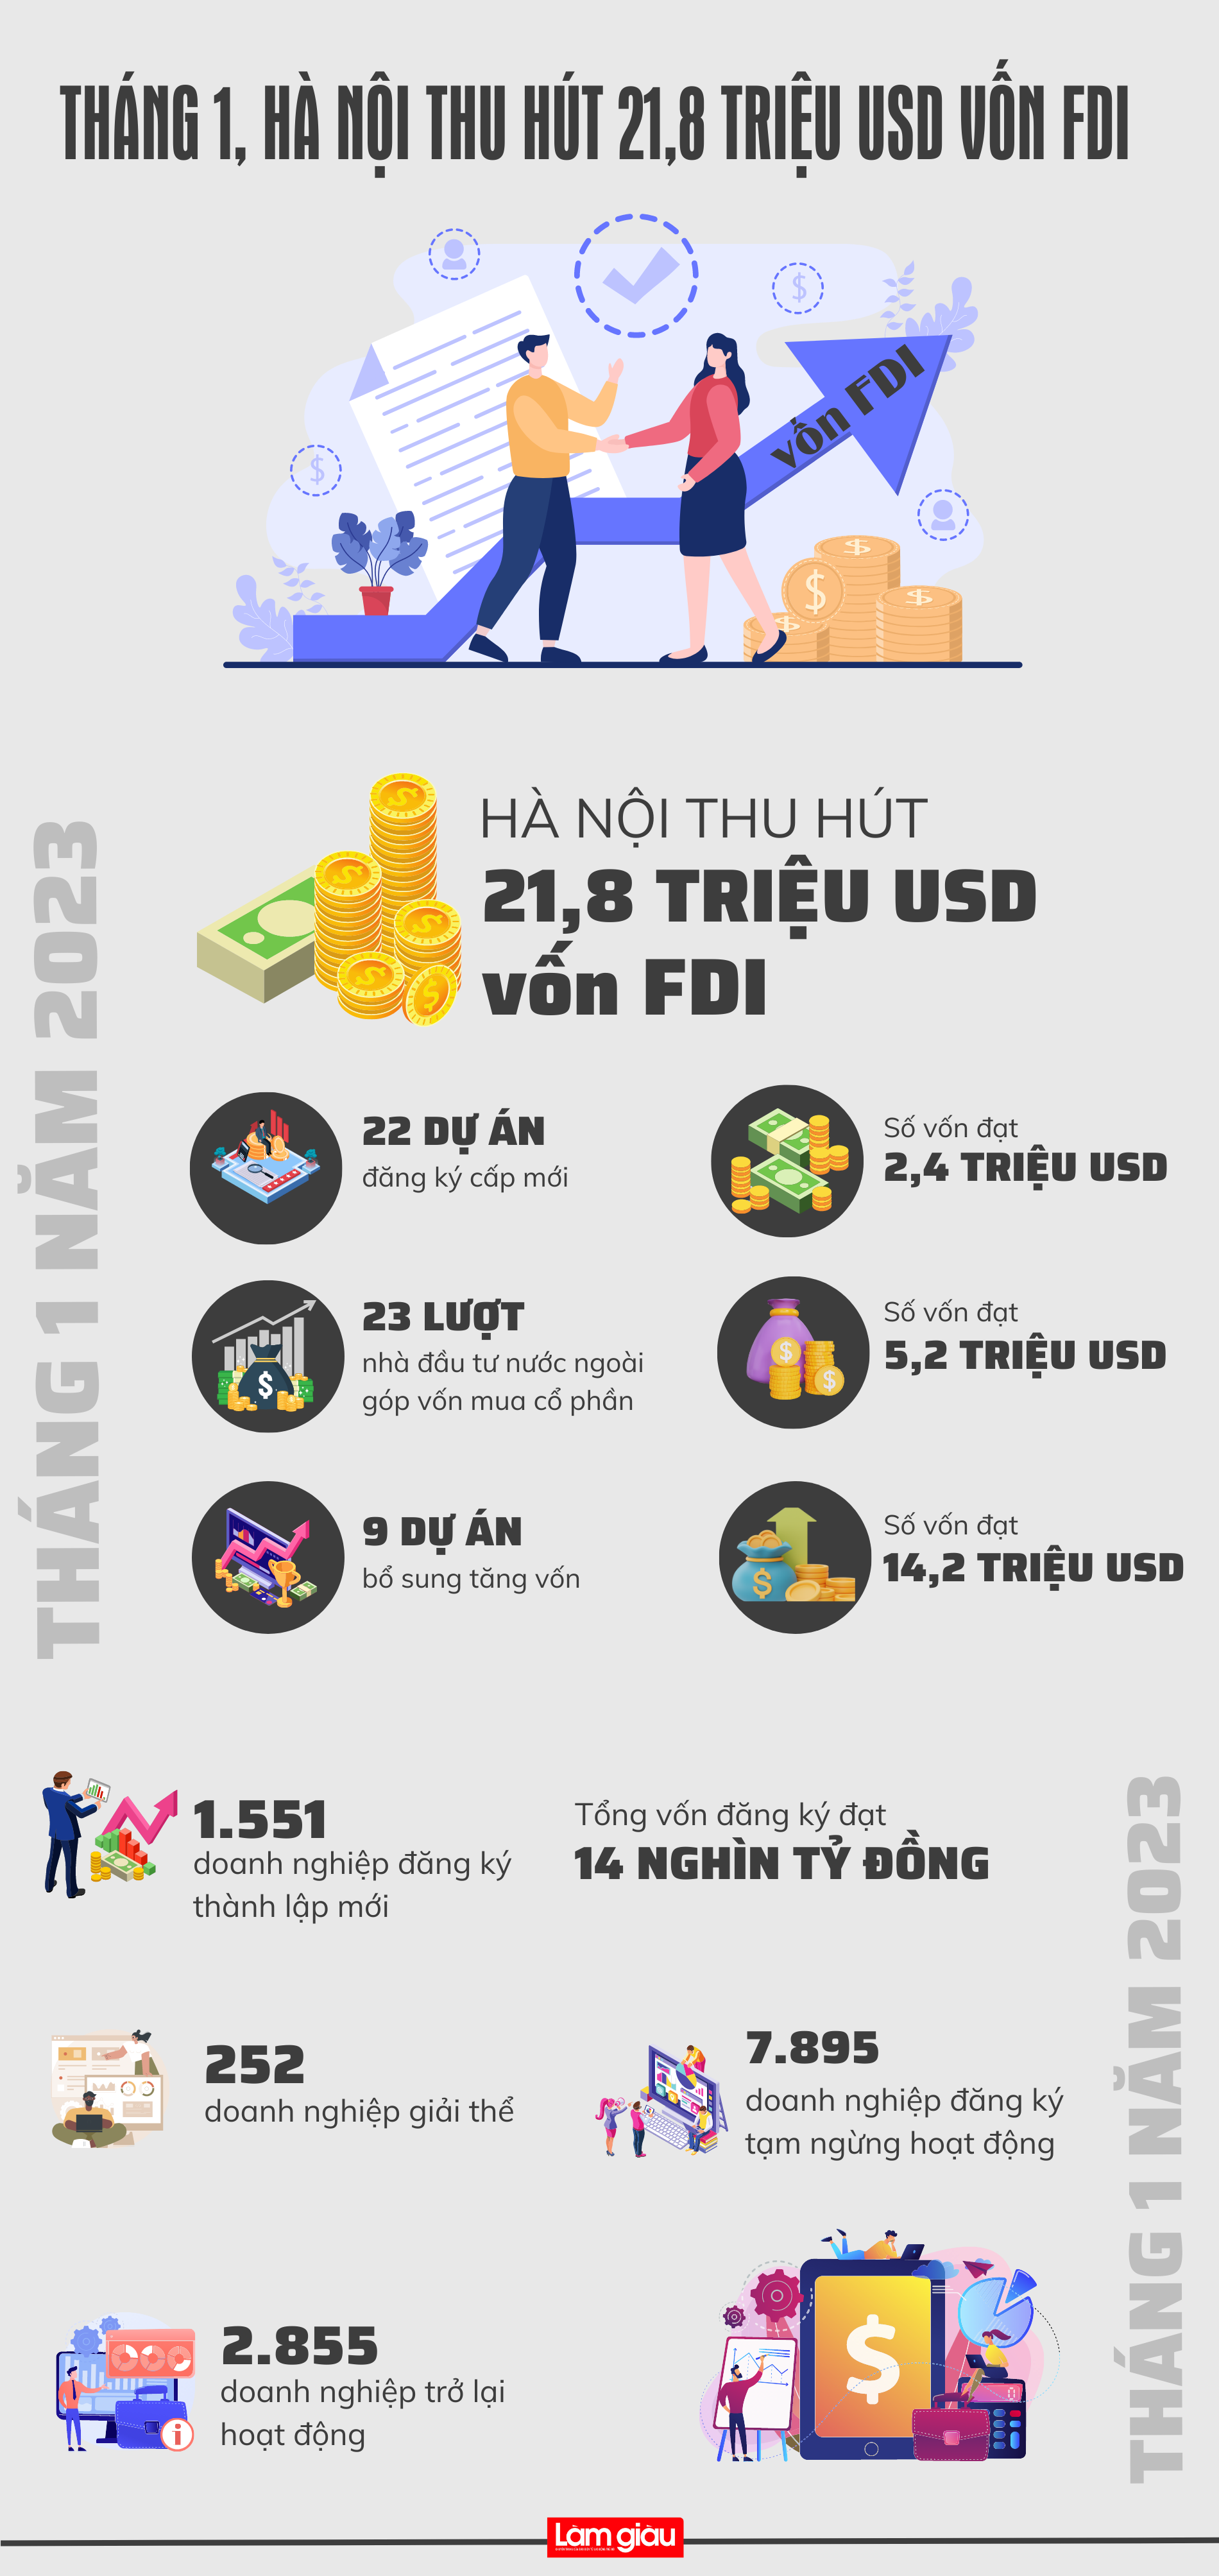 [Infographic]: Tháng 1, Hà Nội thu hút 21,8 triệu USD vốn FDI